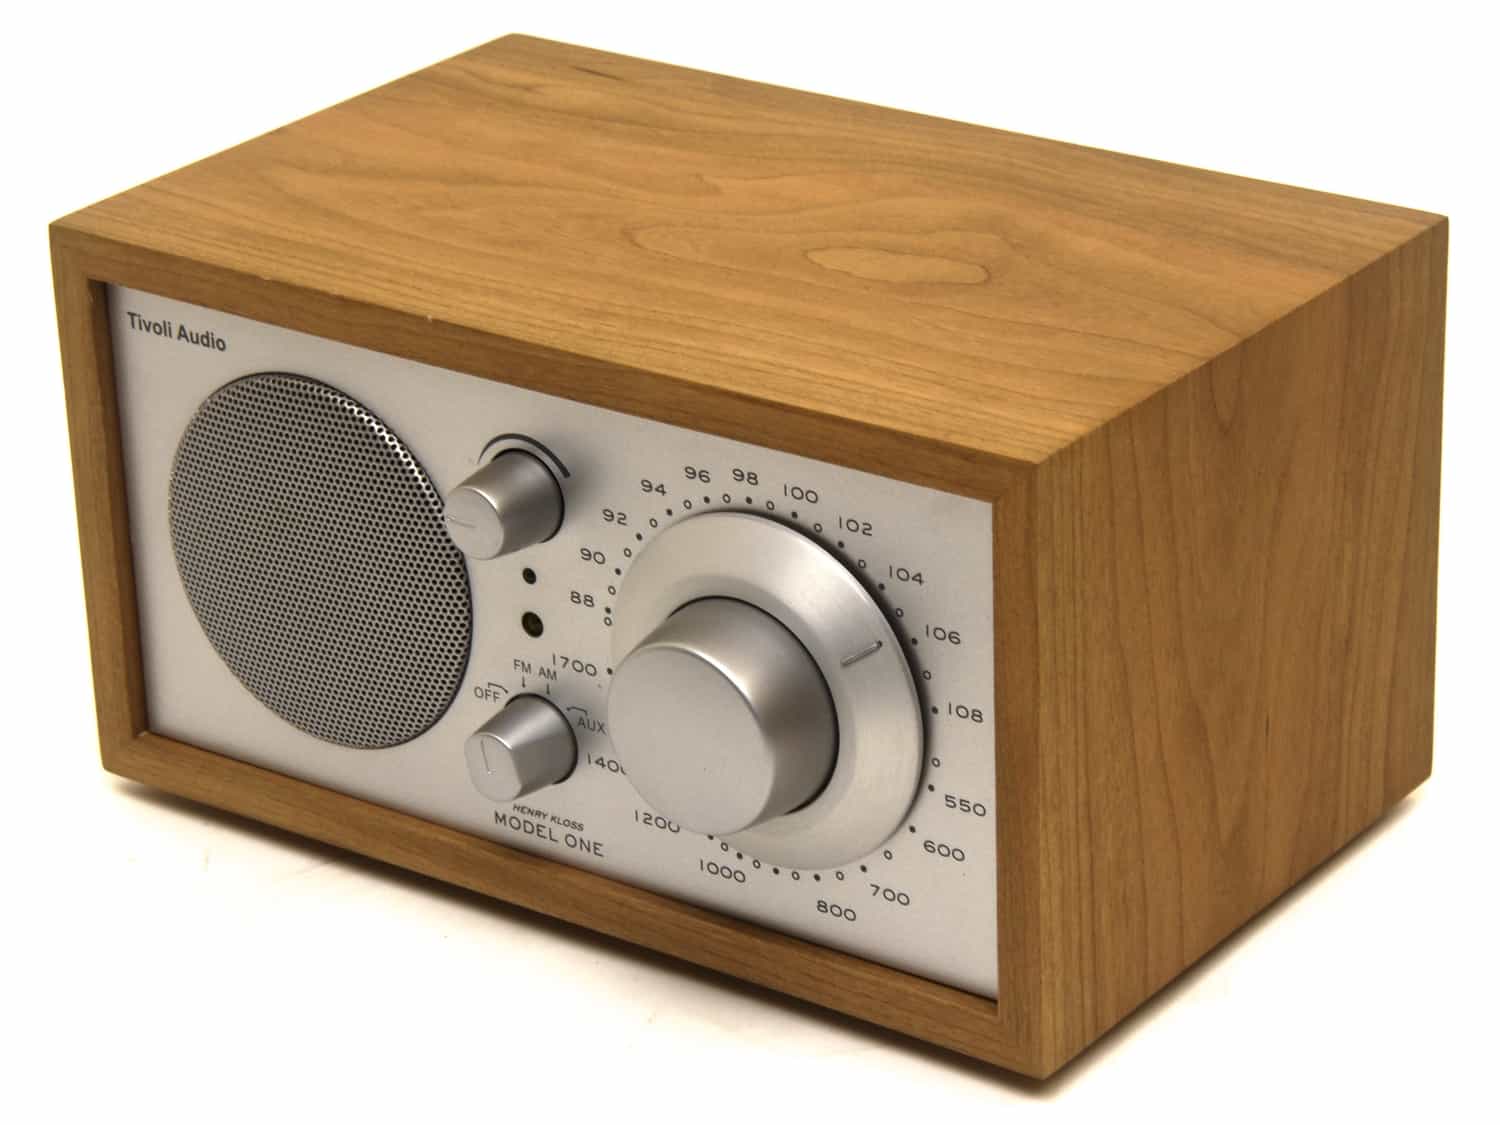 オーディオ機器 ラジオ Tivoli Audio Model One Review ~ | Gadget Review